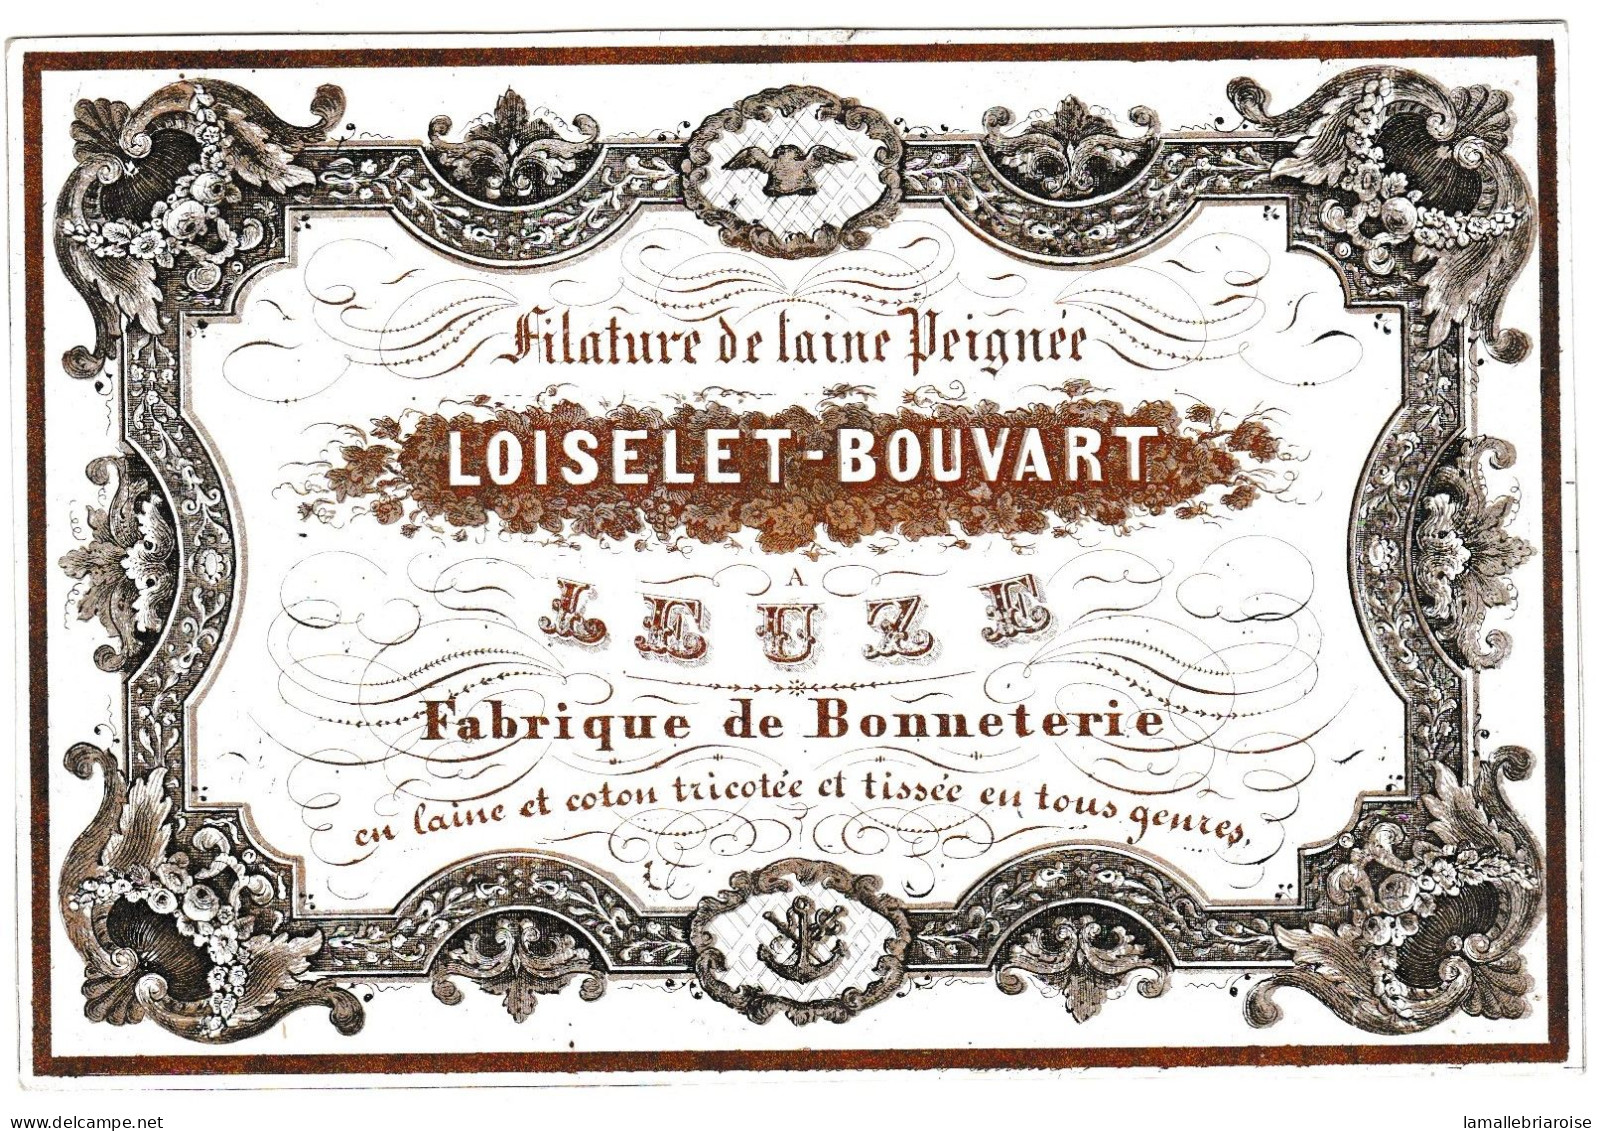 Belgique, "Carte Porcelaine" Porseleinkaart, Filature De Laine Peignée, Loiselet - Bouvart, Leuze, 133 X 90mm - Porzellan